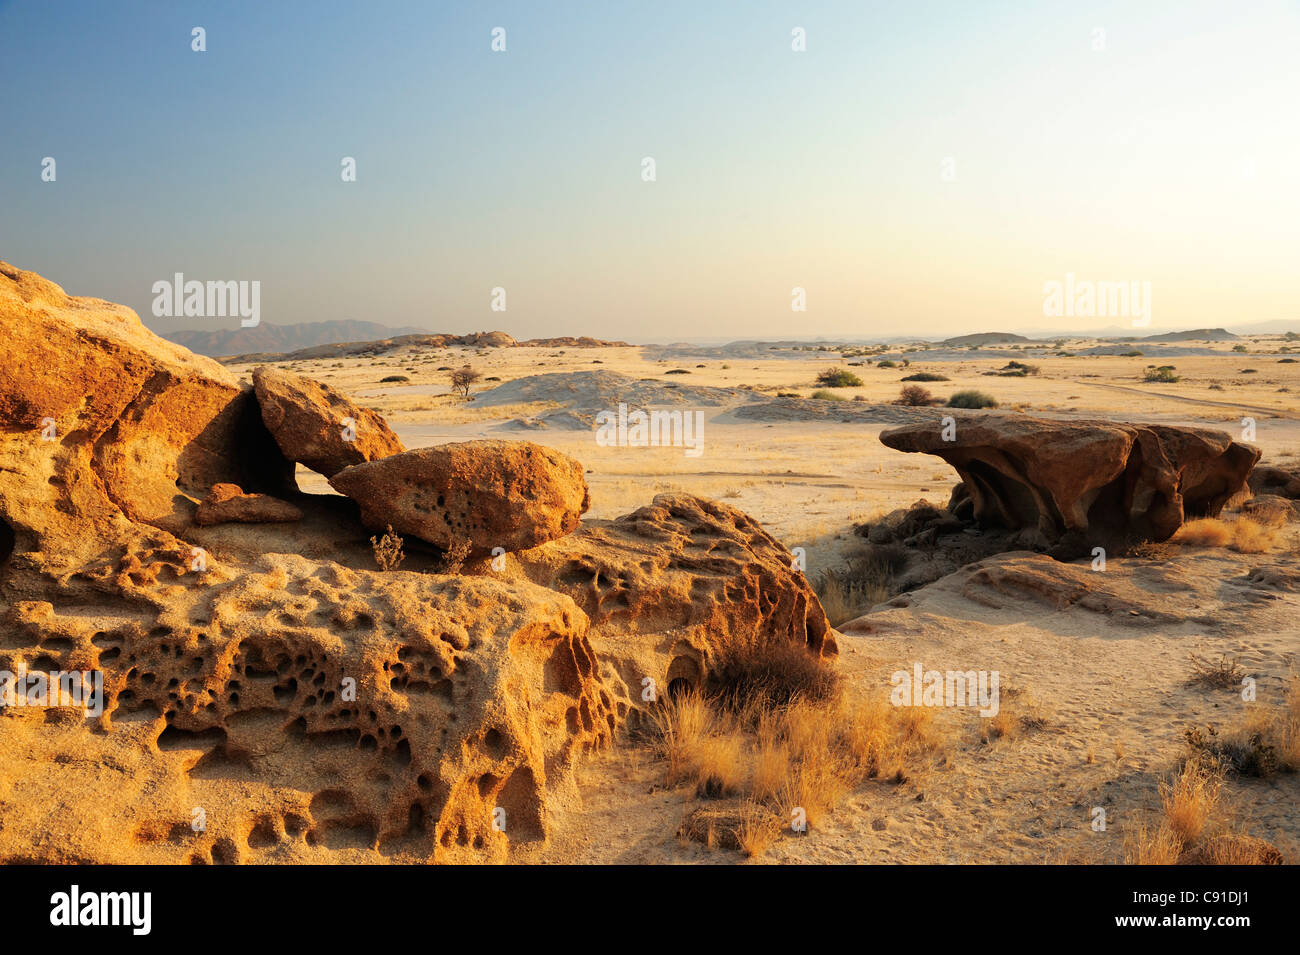 À l'érosion éolienne bizarre rock avec vue sur la savane, désert du Namib, le Namib, Namibie Banque D'Images